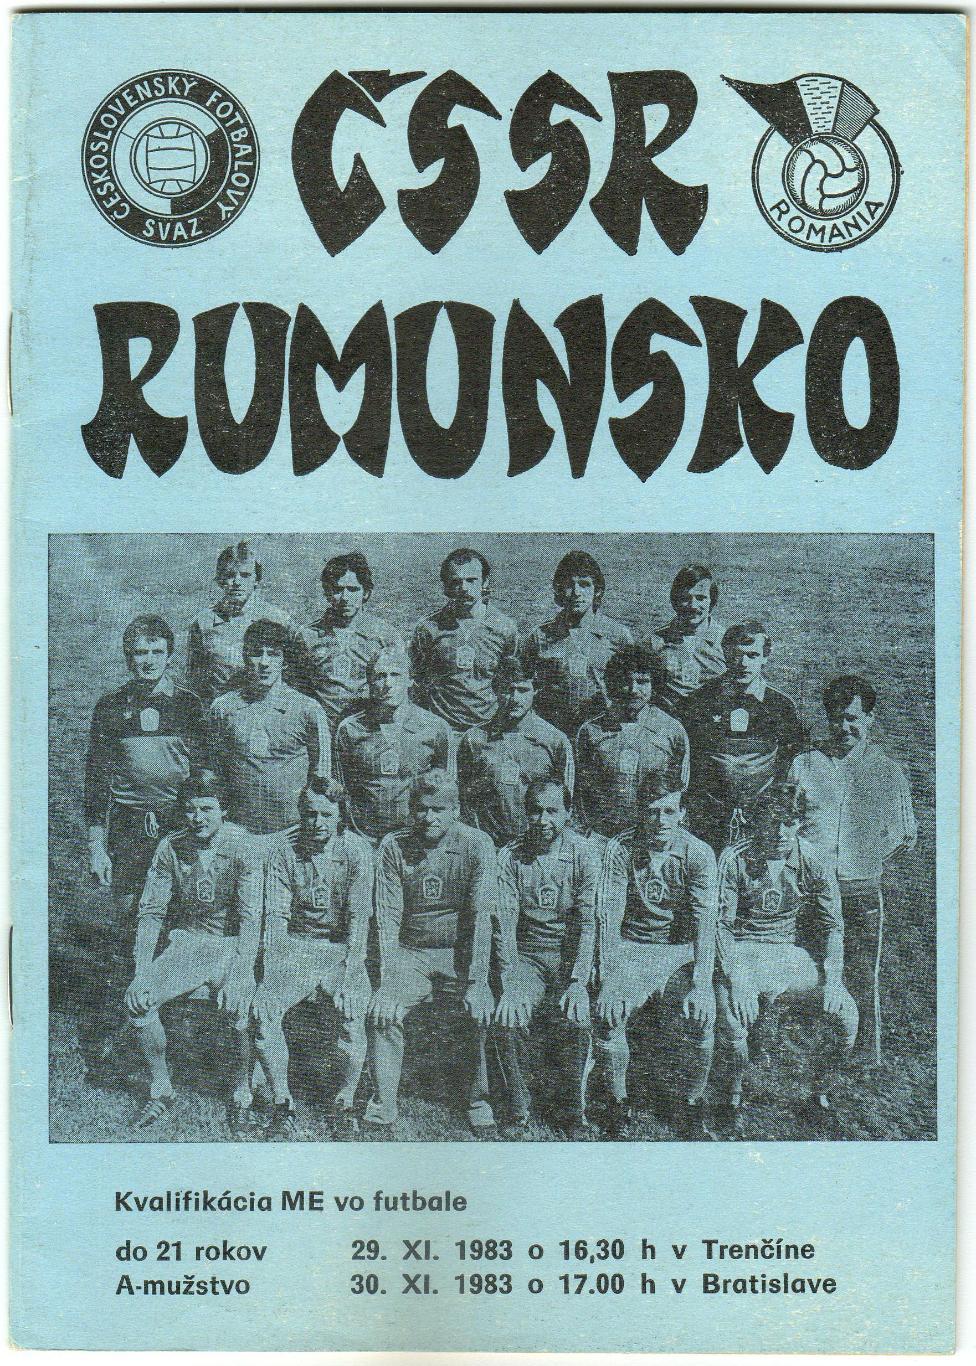 ЧССР – Румыния 29-30.11.1983 ОЧЕ Первые и молодежные сборные